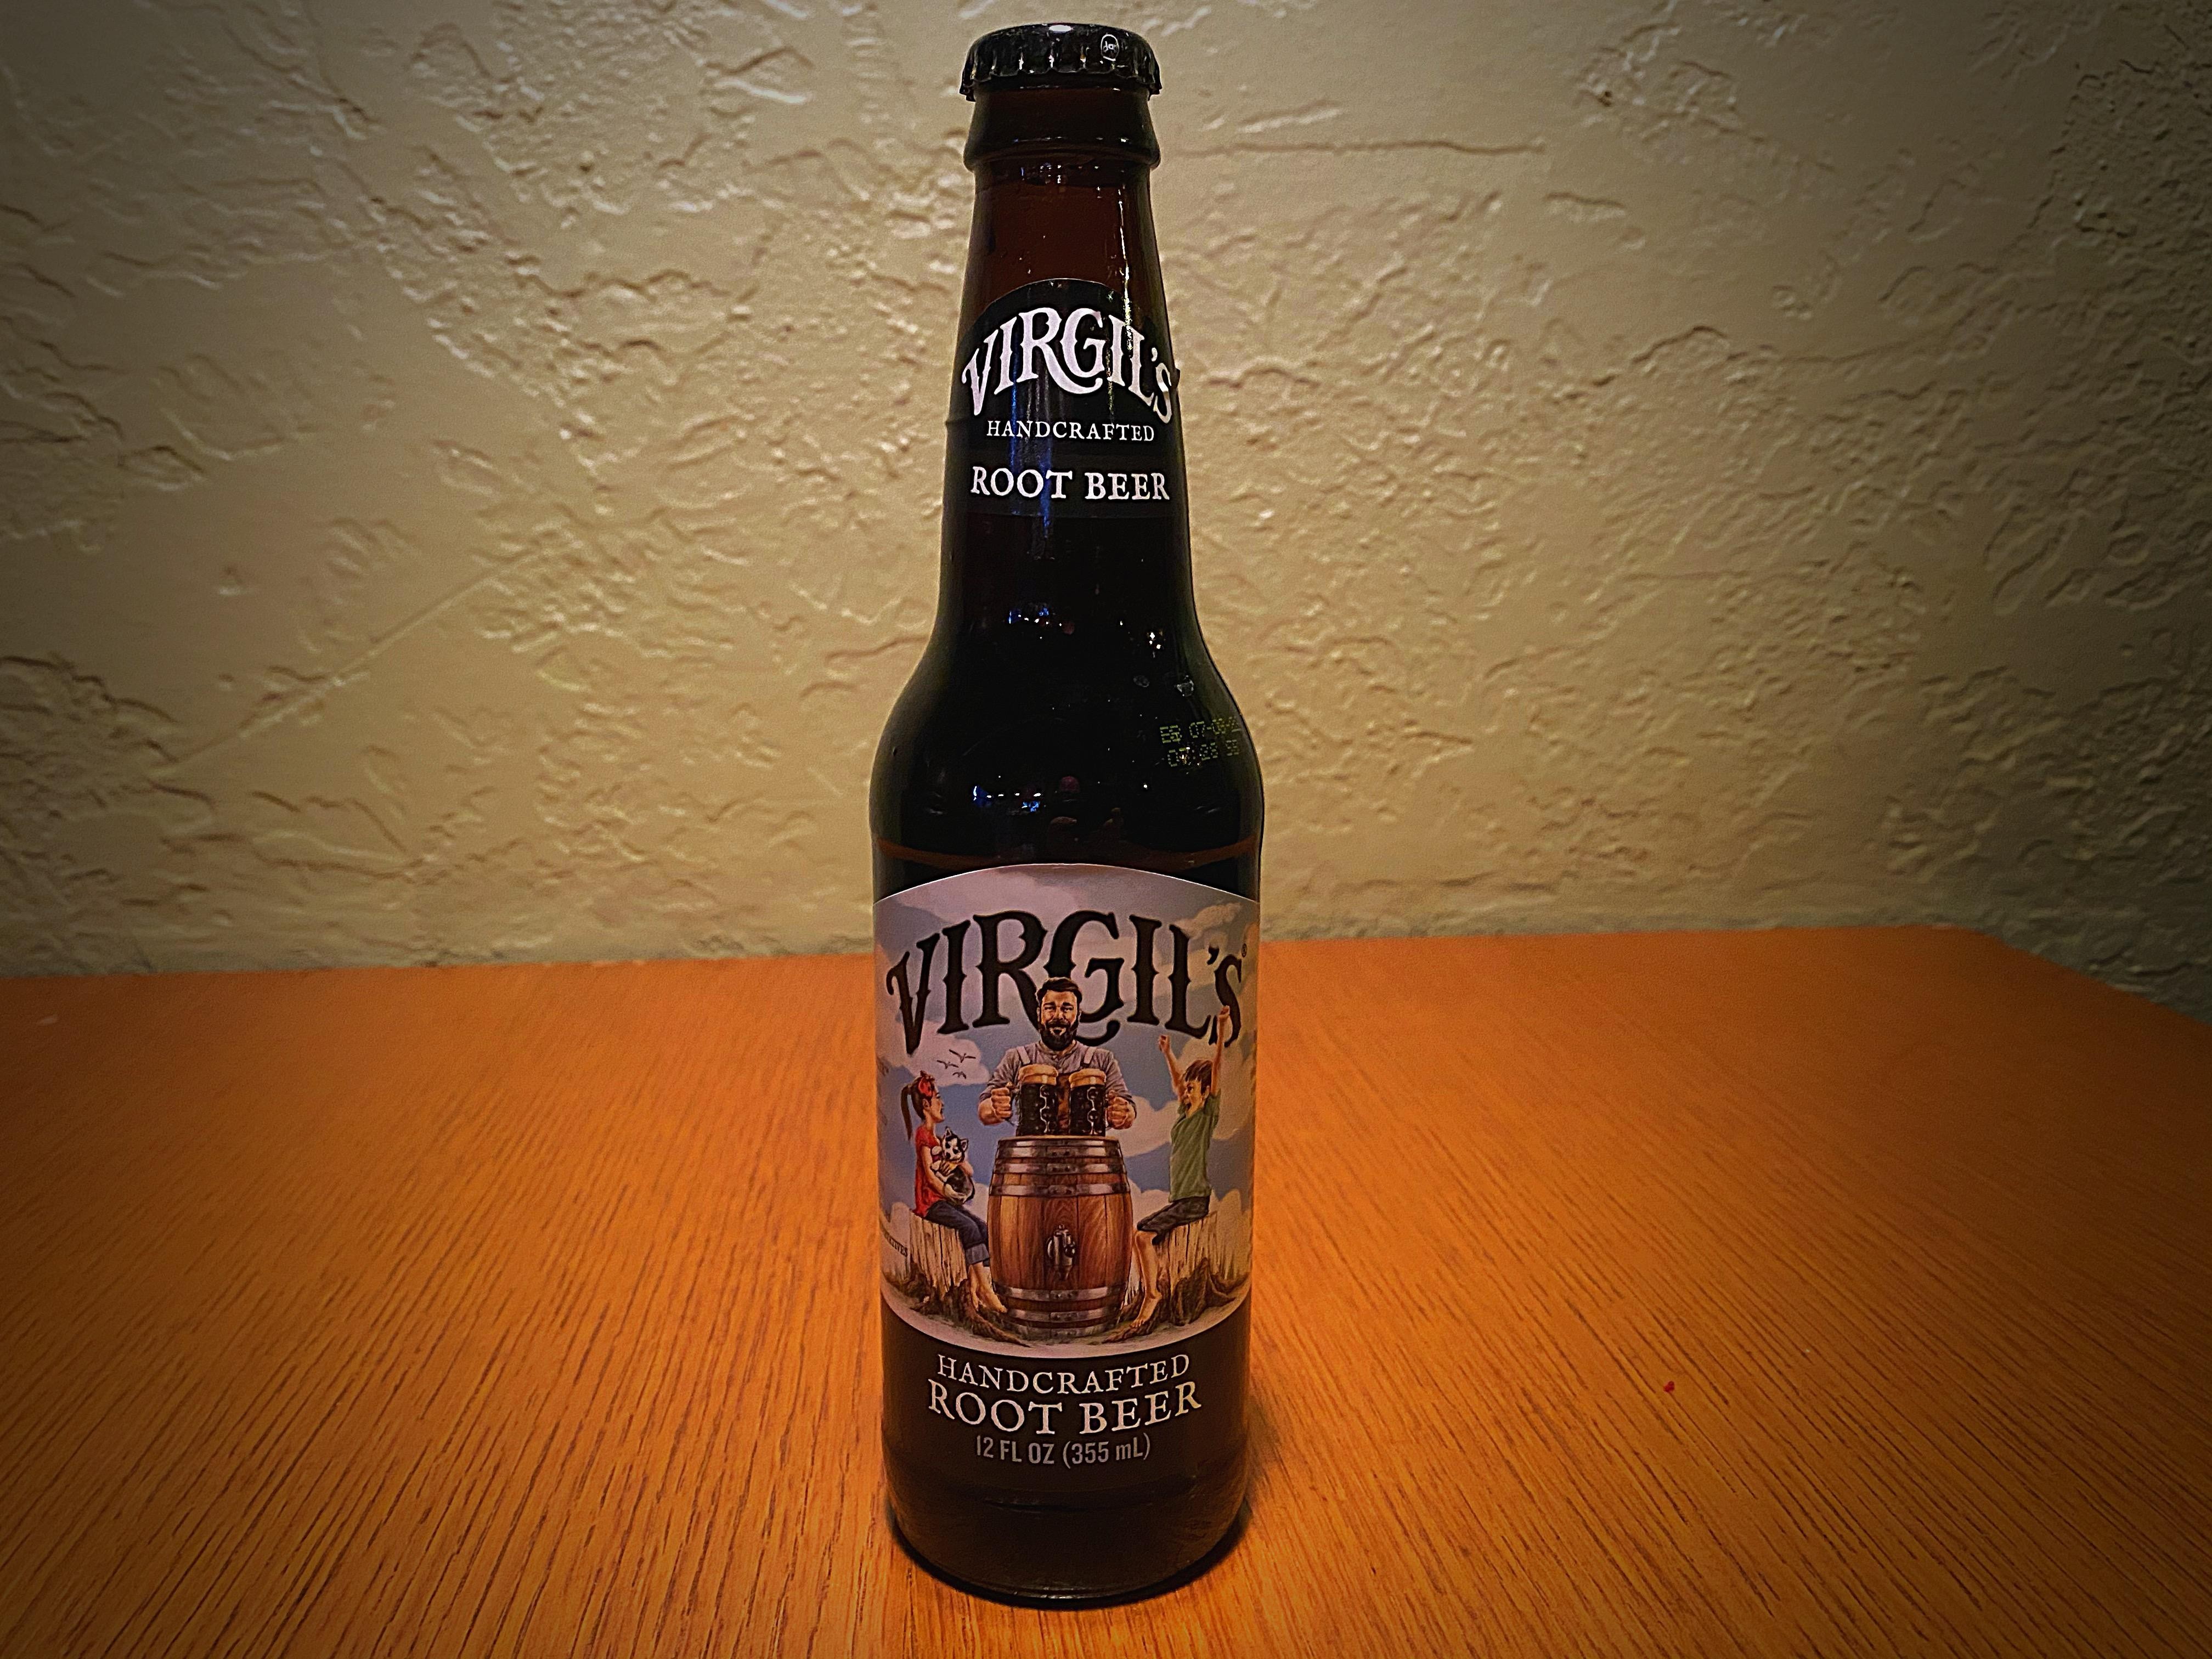 VIRGIL'S ROOT BEER